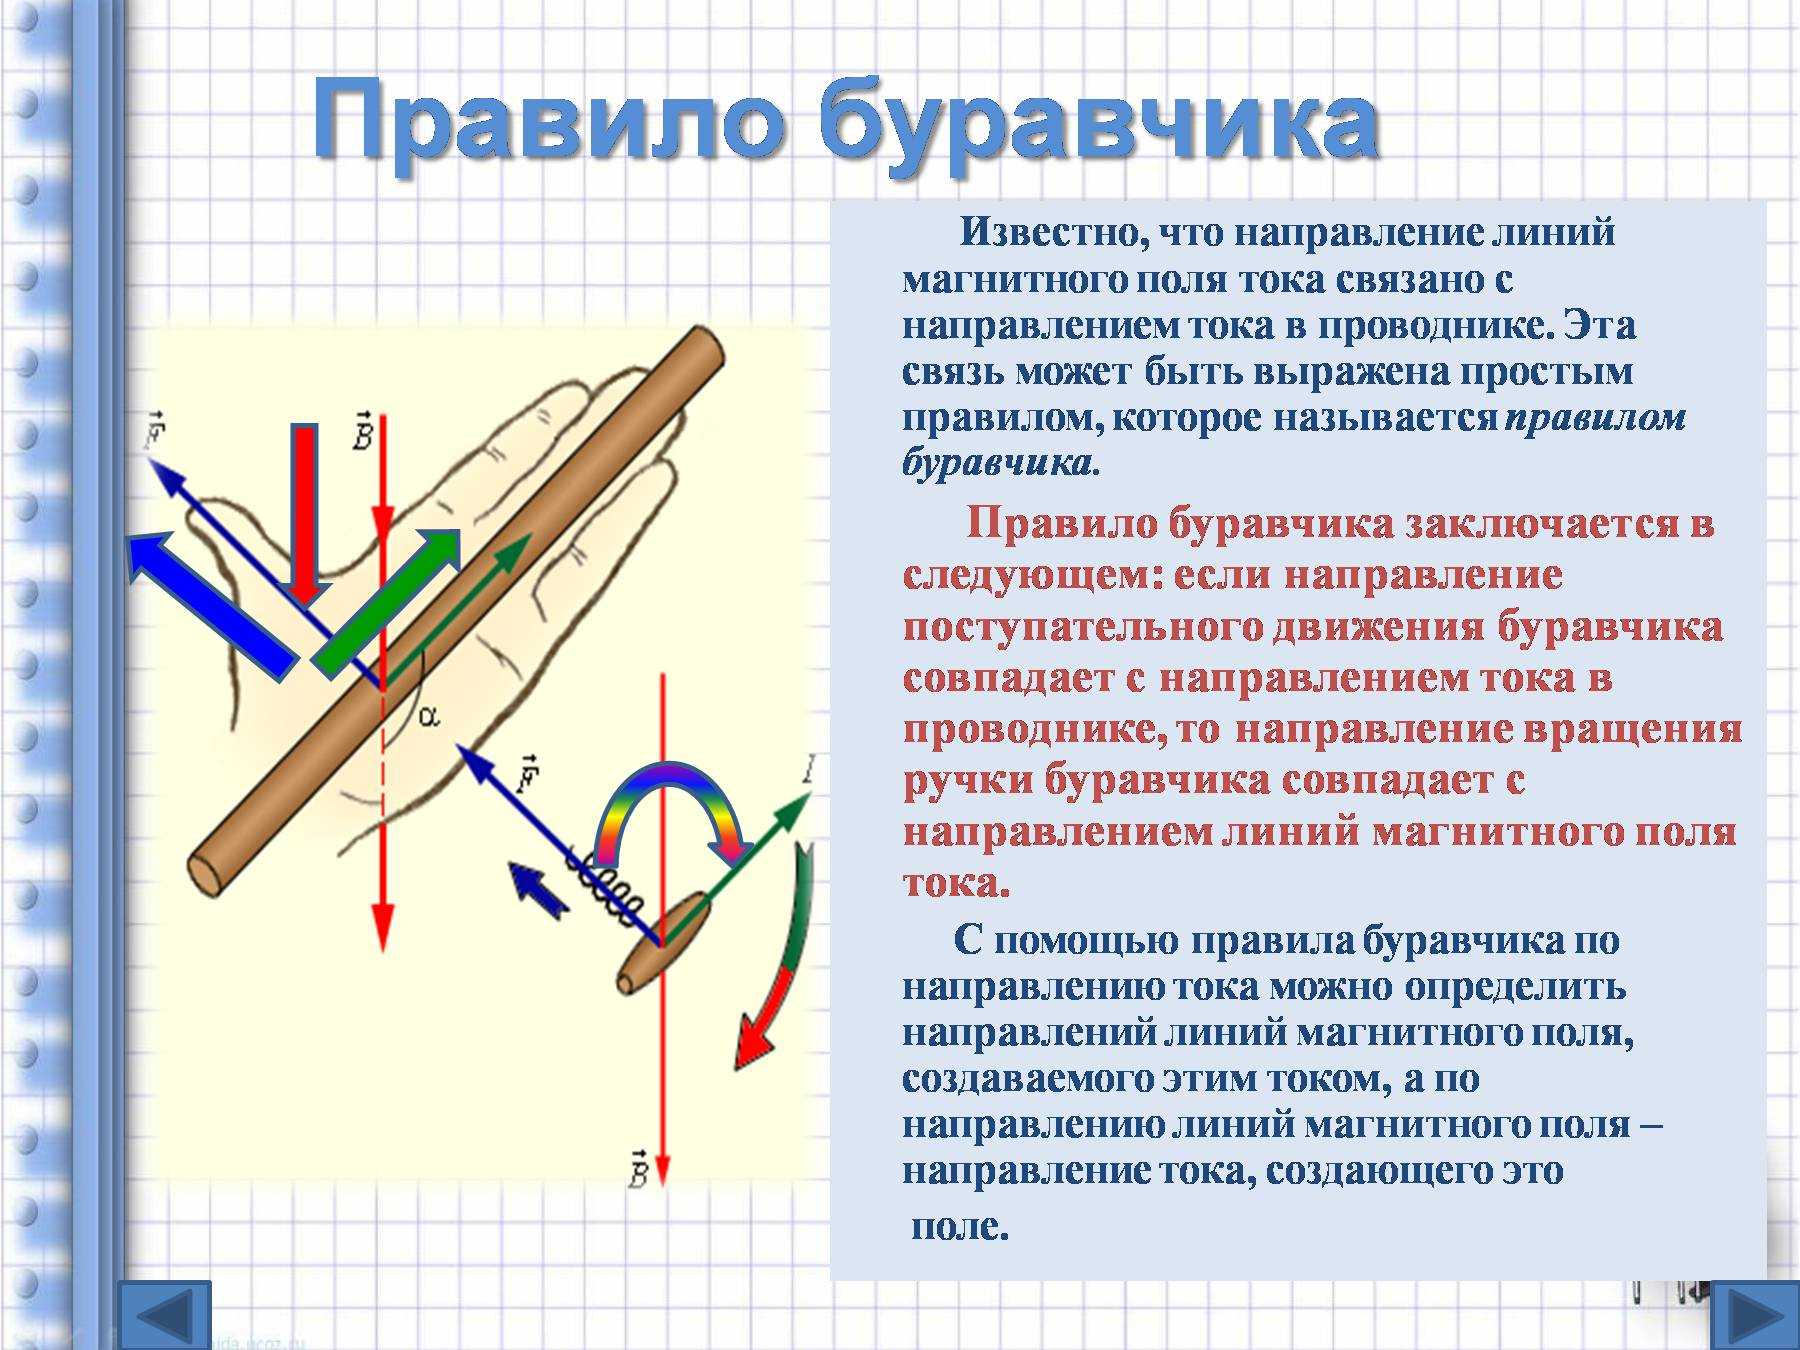 Правило буравчика для определения направления магнитного поля